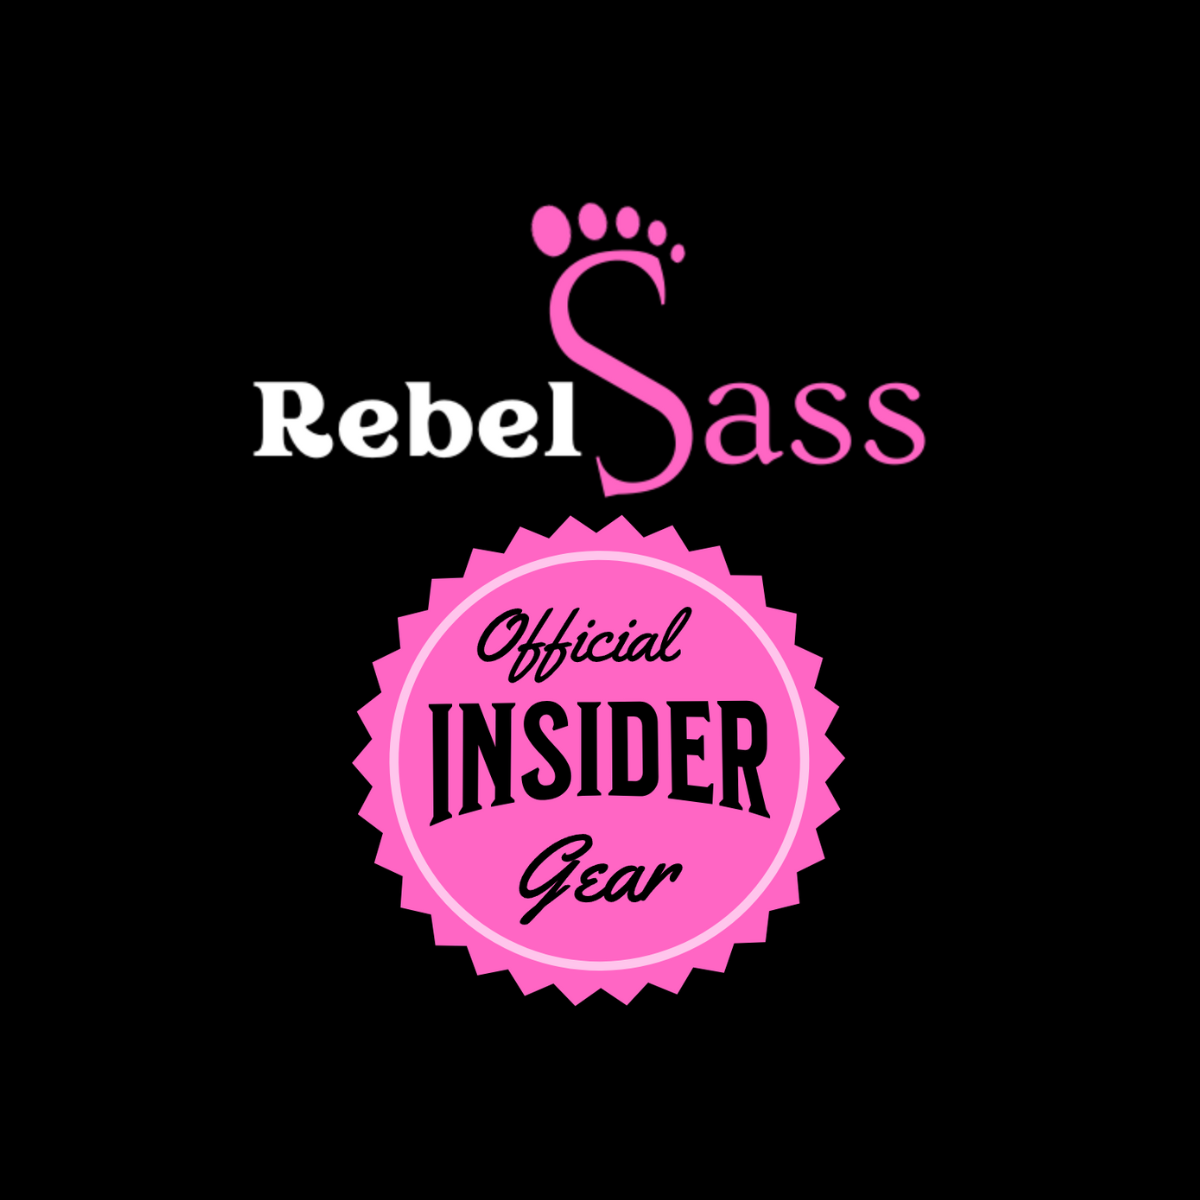 Official Insider Gear - RebelSassBigfoot.com